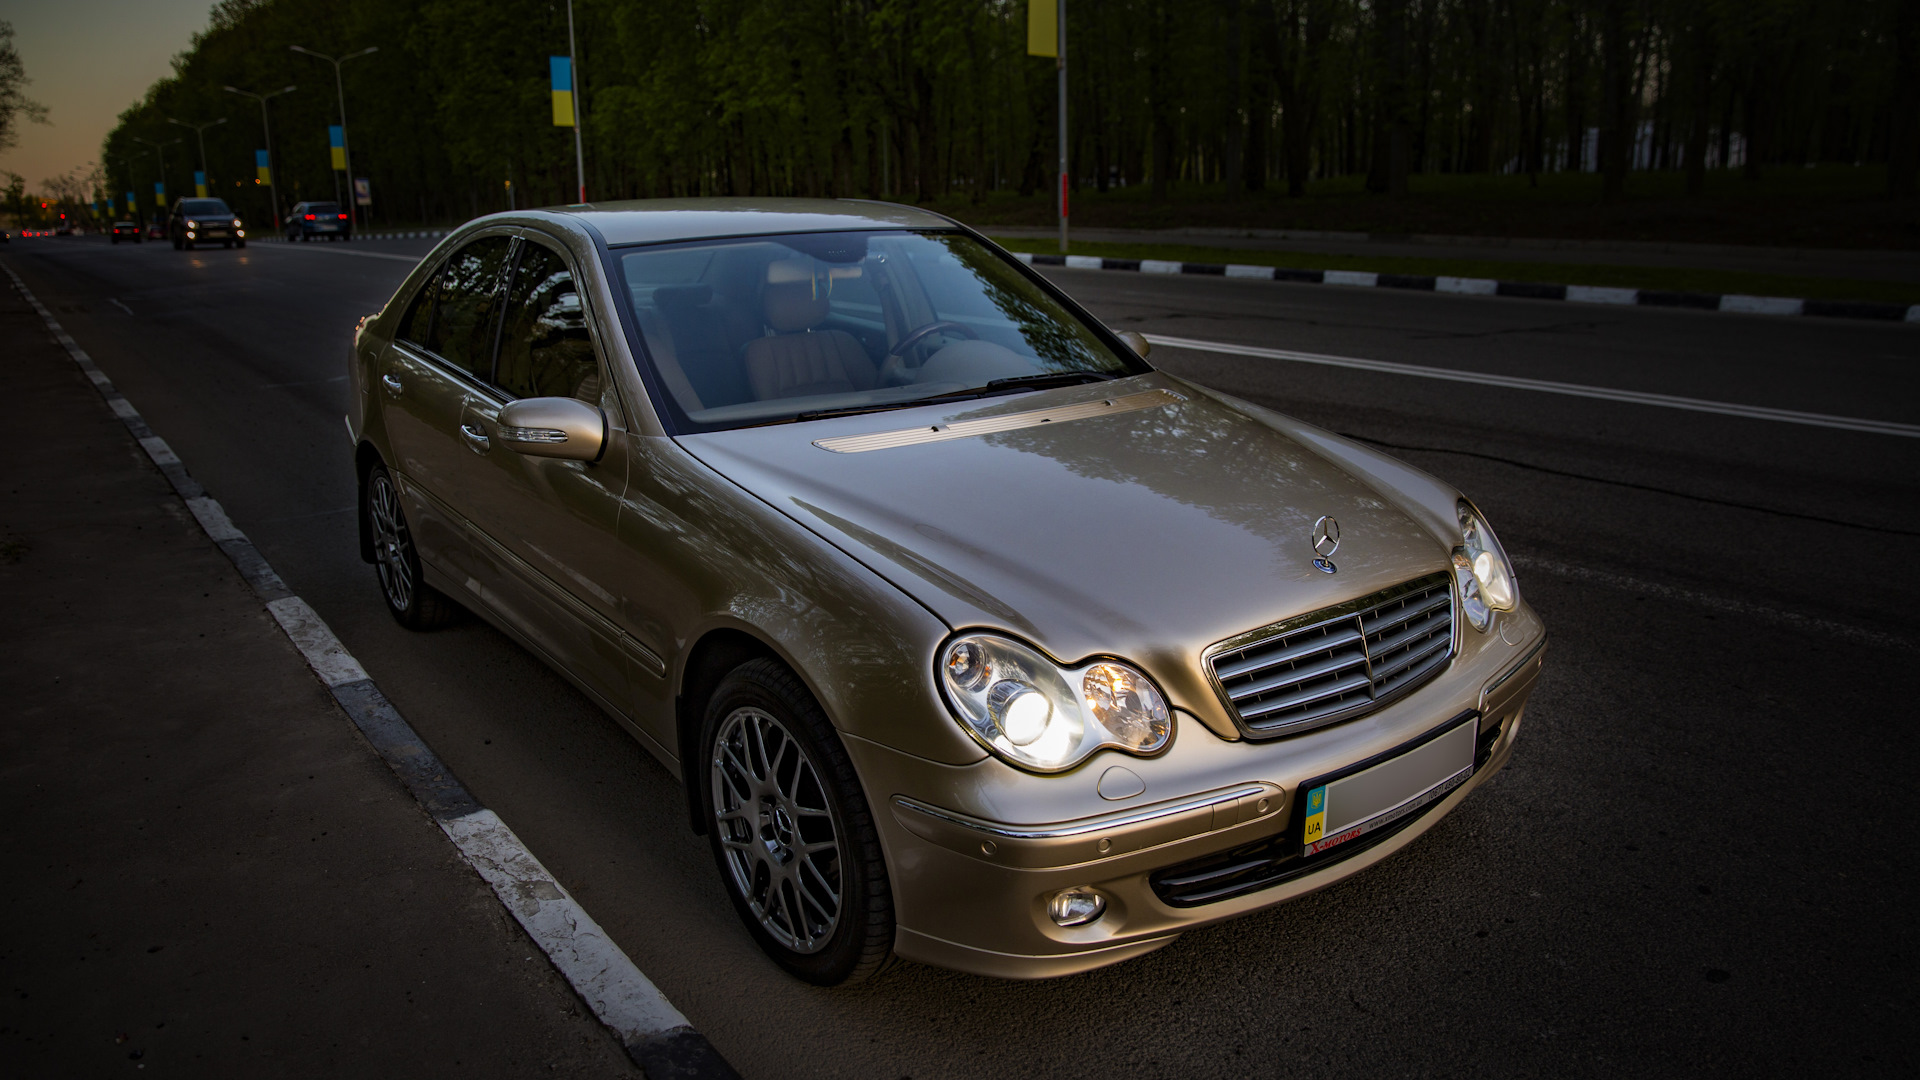 Mercedes 2005 годов. Mercedes Benz c200 2005. Mercedes-Benz c-class c200 Kompressor. Мерседес с200 2005. Мерседес w203 золотой.